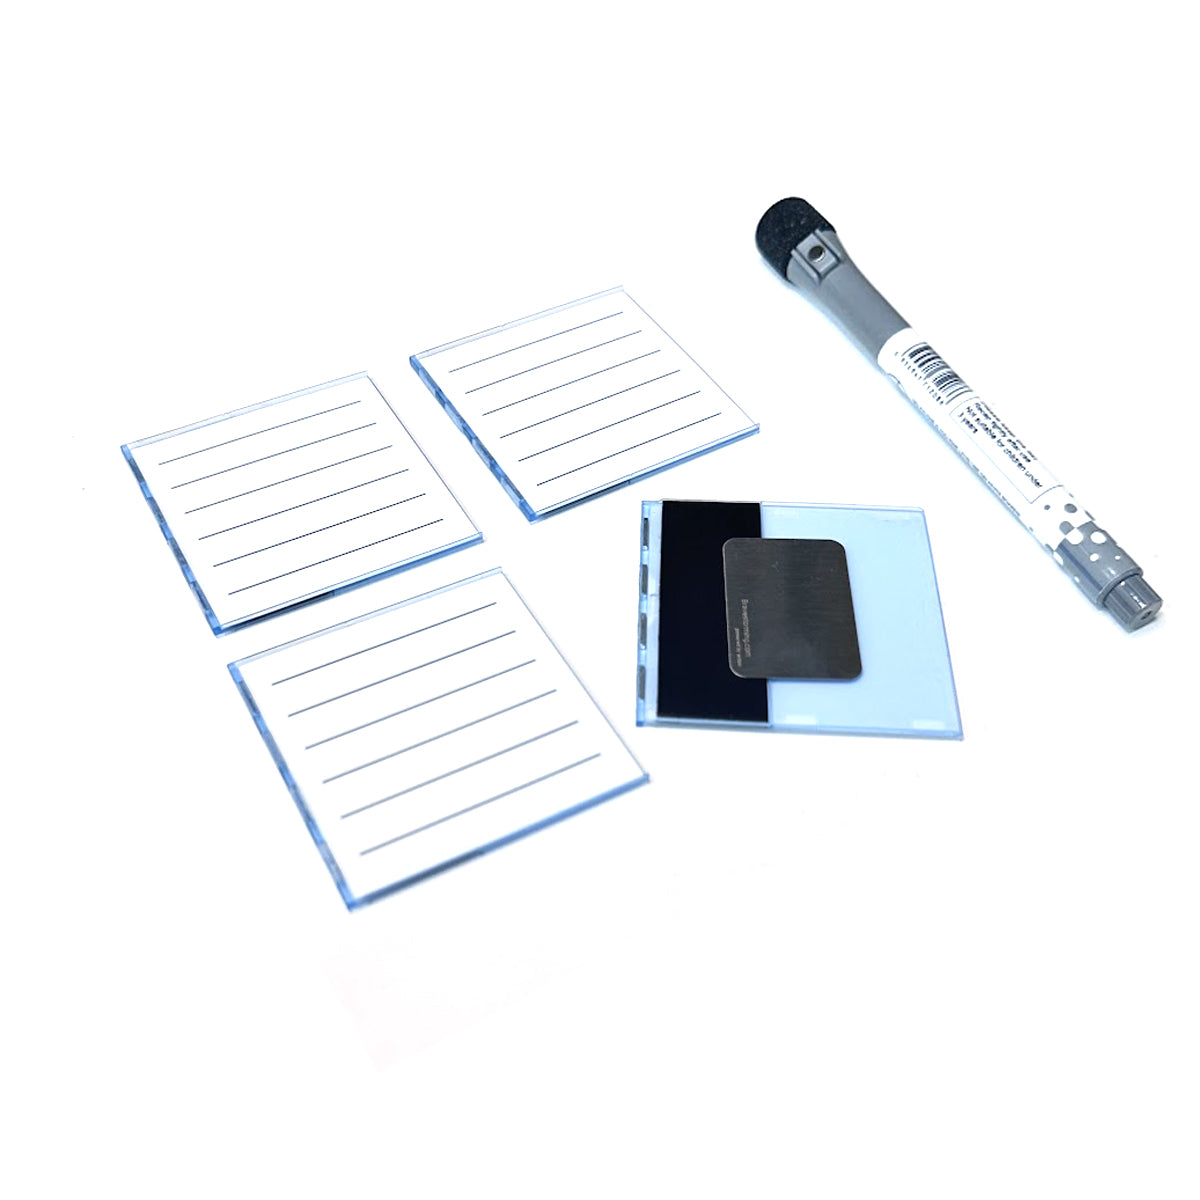 Mover Erase Pack (Stift im Lieferumfang enthalten)